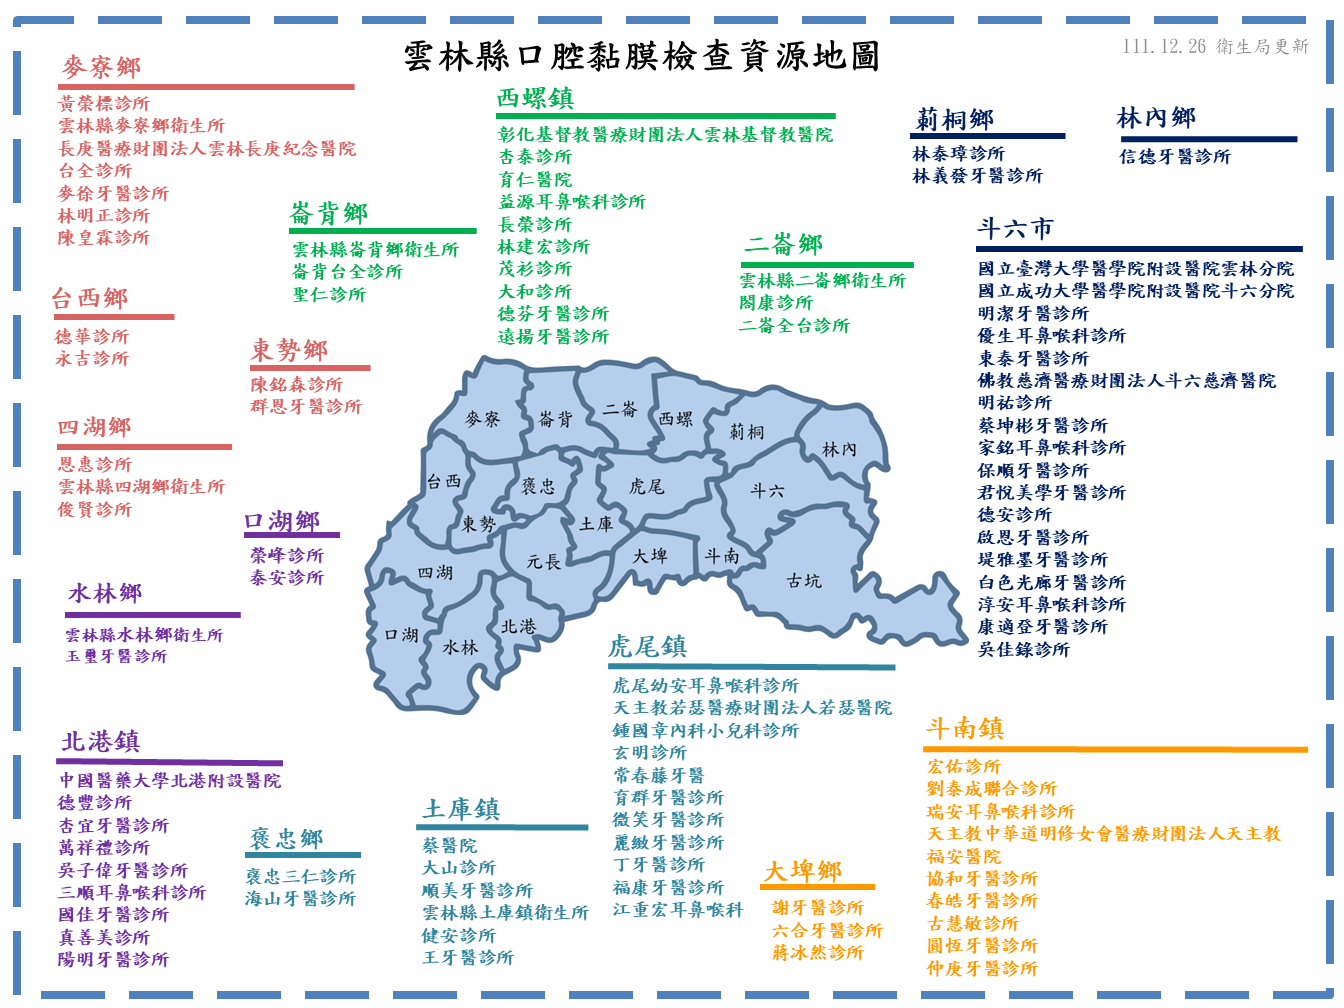 2雲林縣口篩資源地圖.PNG